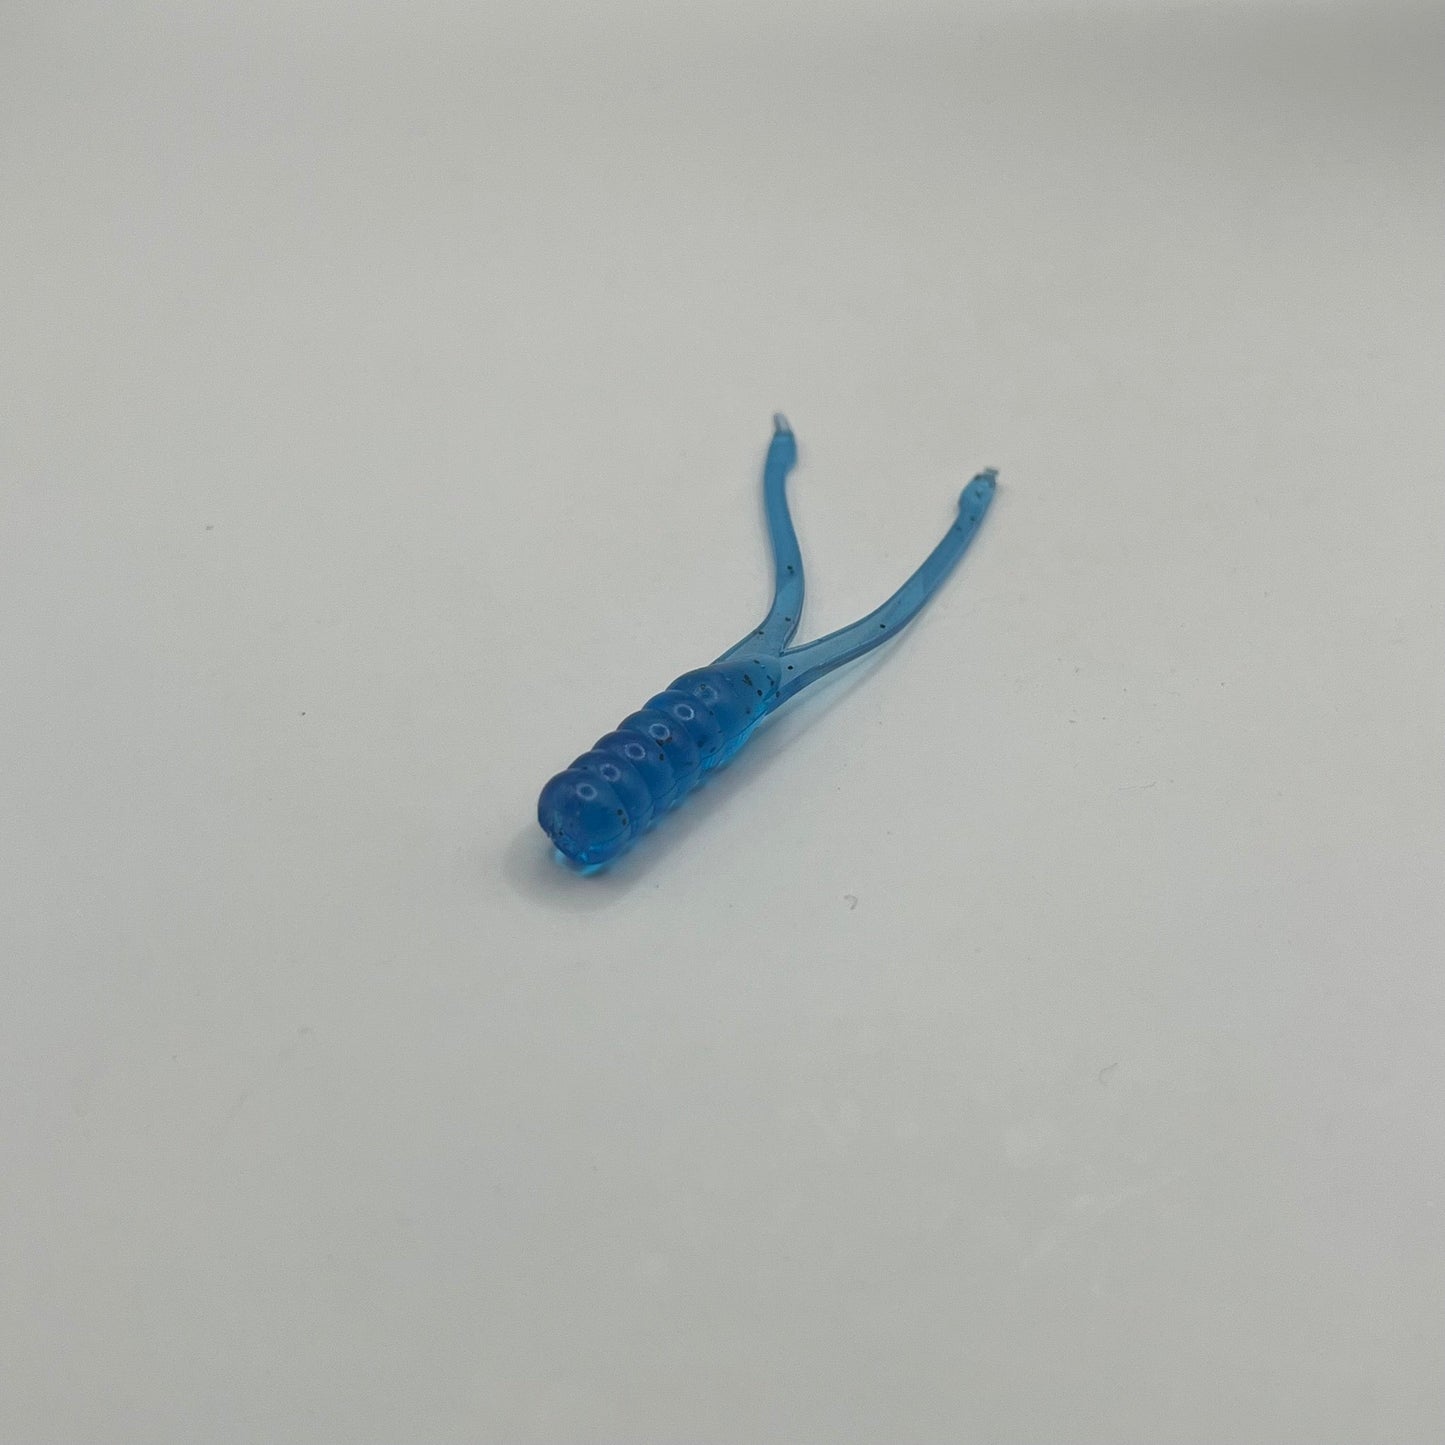 Light Blue Crappie Beetle Bug 2.25" - Premium Soft Plastic Lure from JAC’D Bait Co - Shop now!